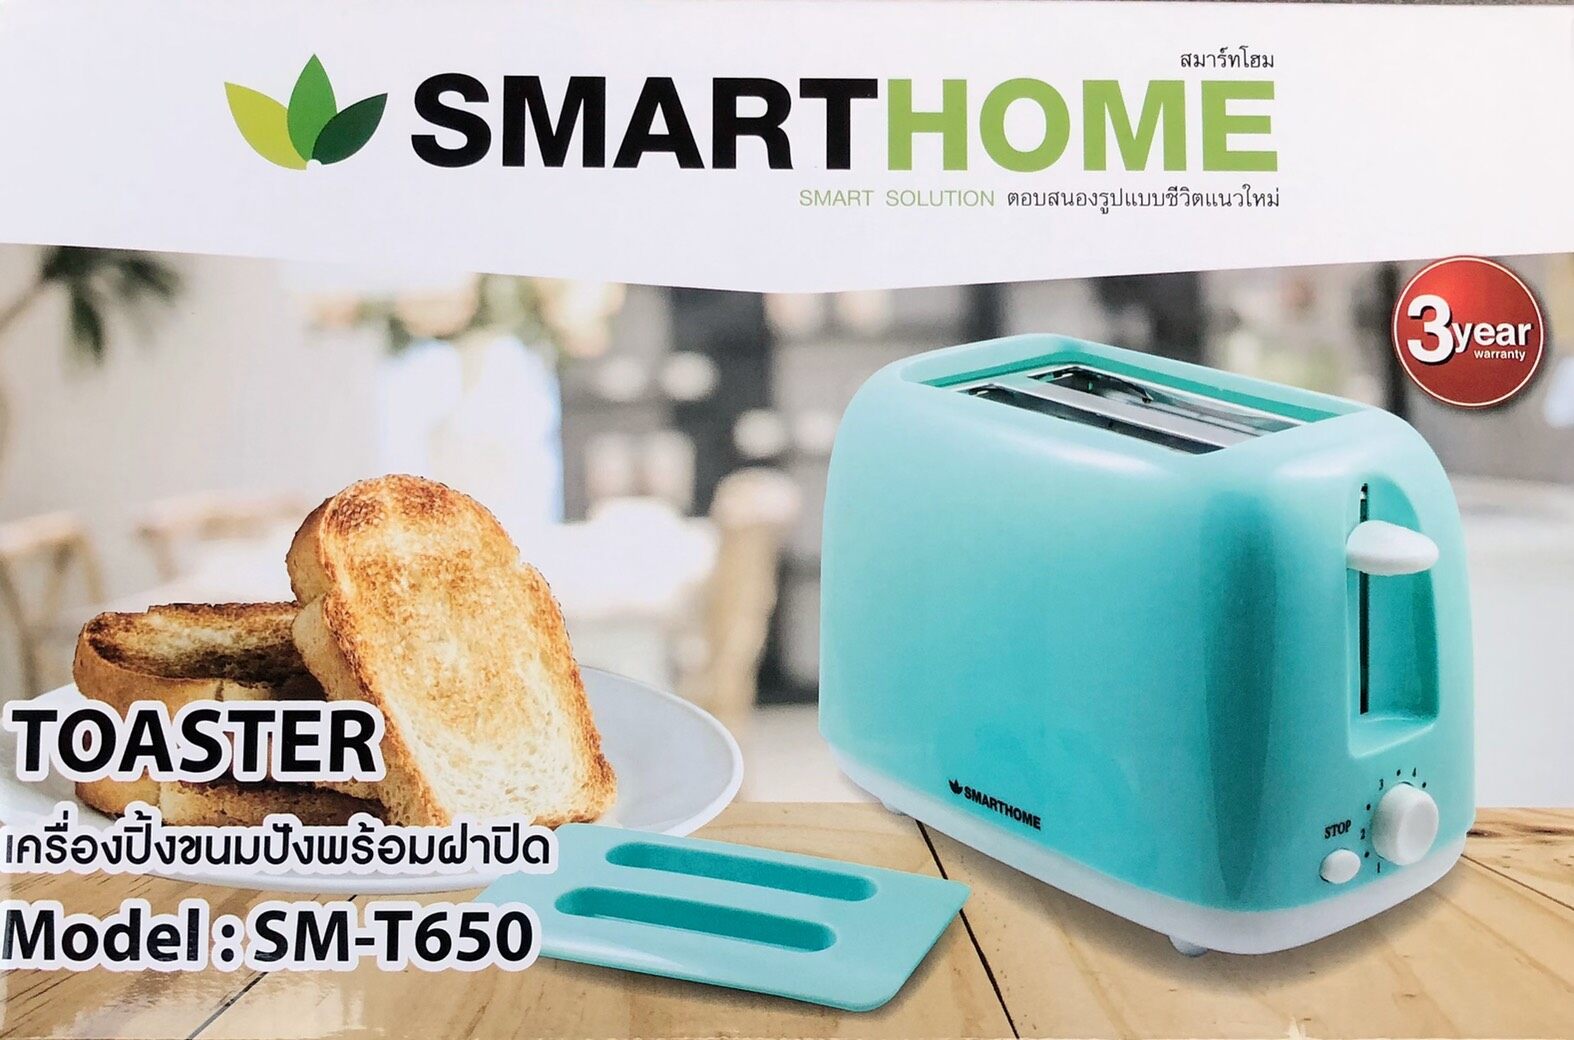 Smart home Toaster เครื่องปิ้งขนมปัง 2ชิ้น รุ่น SM-T650